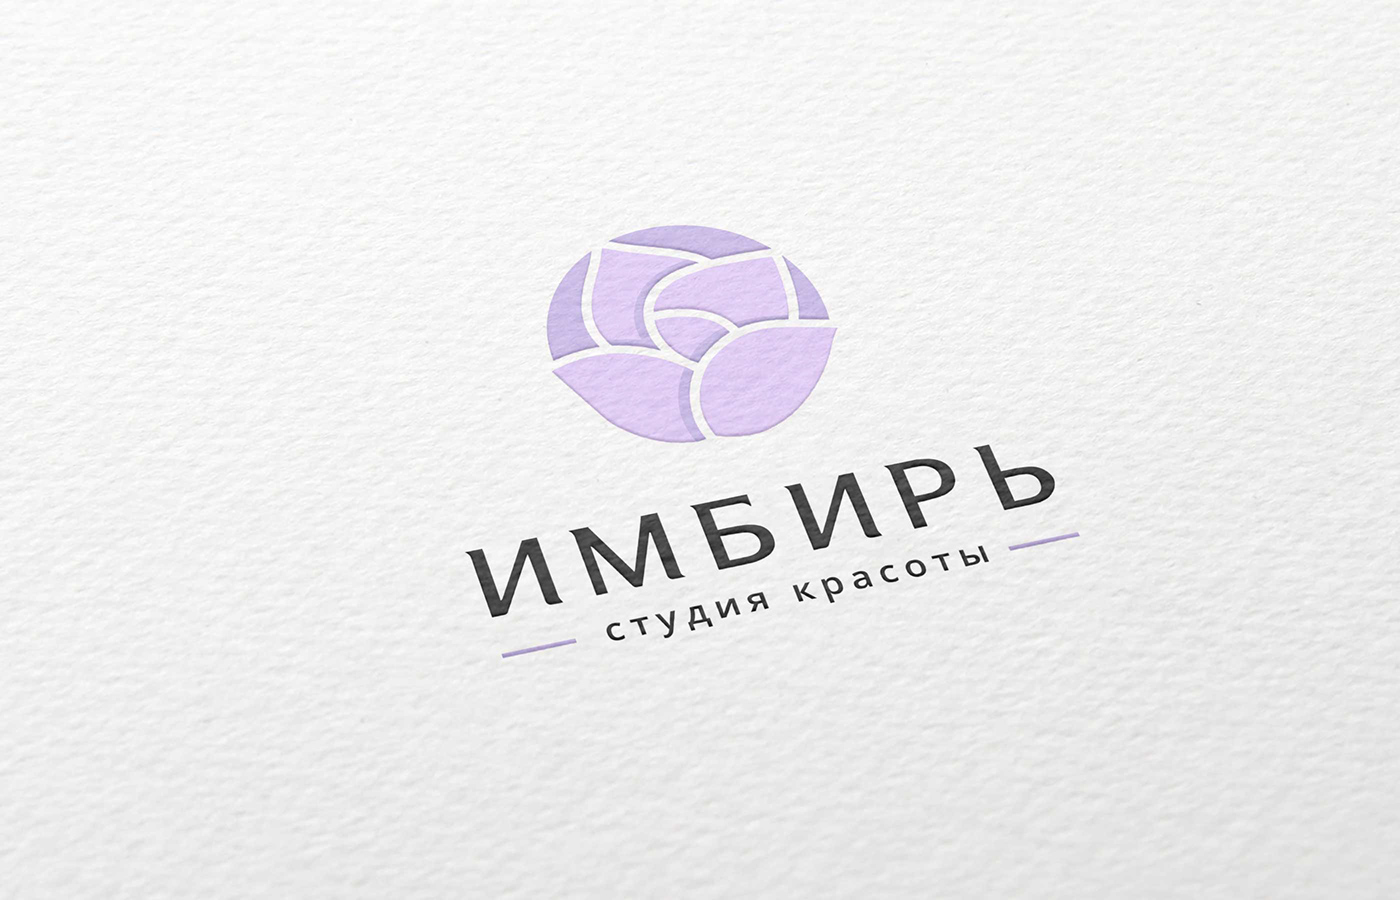 Logotype logo flower beauty salon ginger violet lavender corporate style branding 